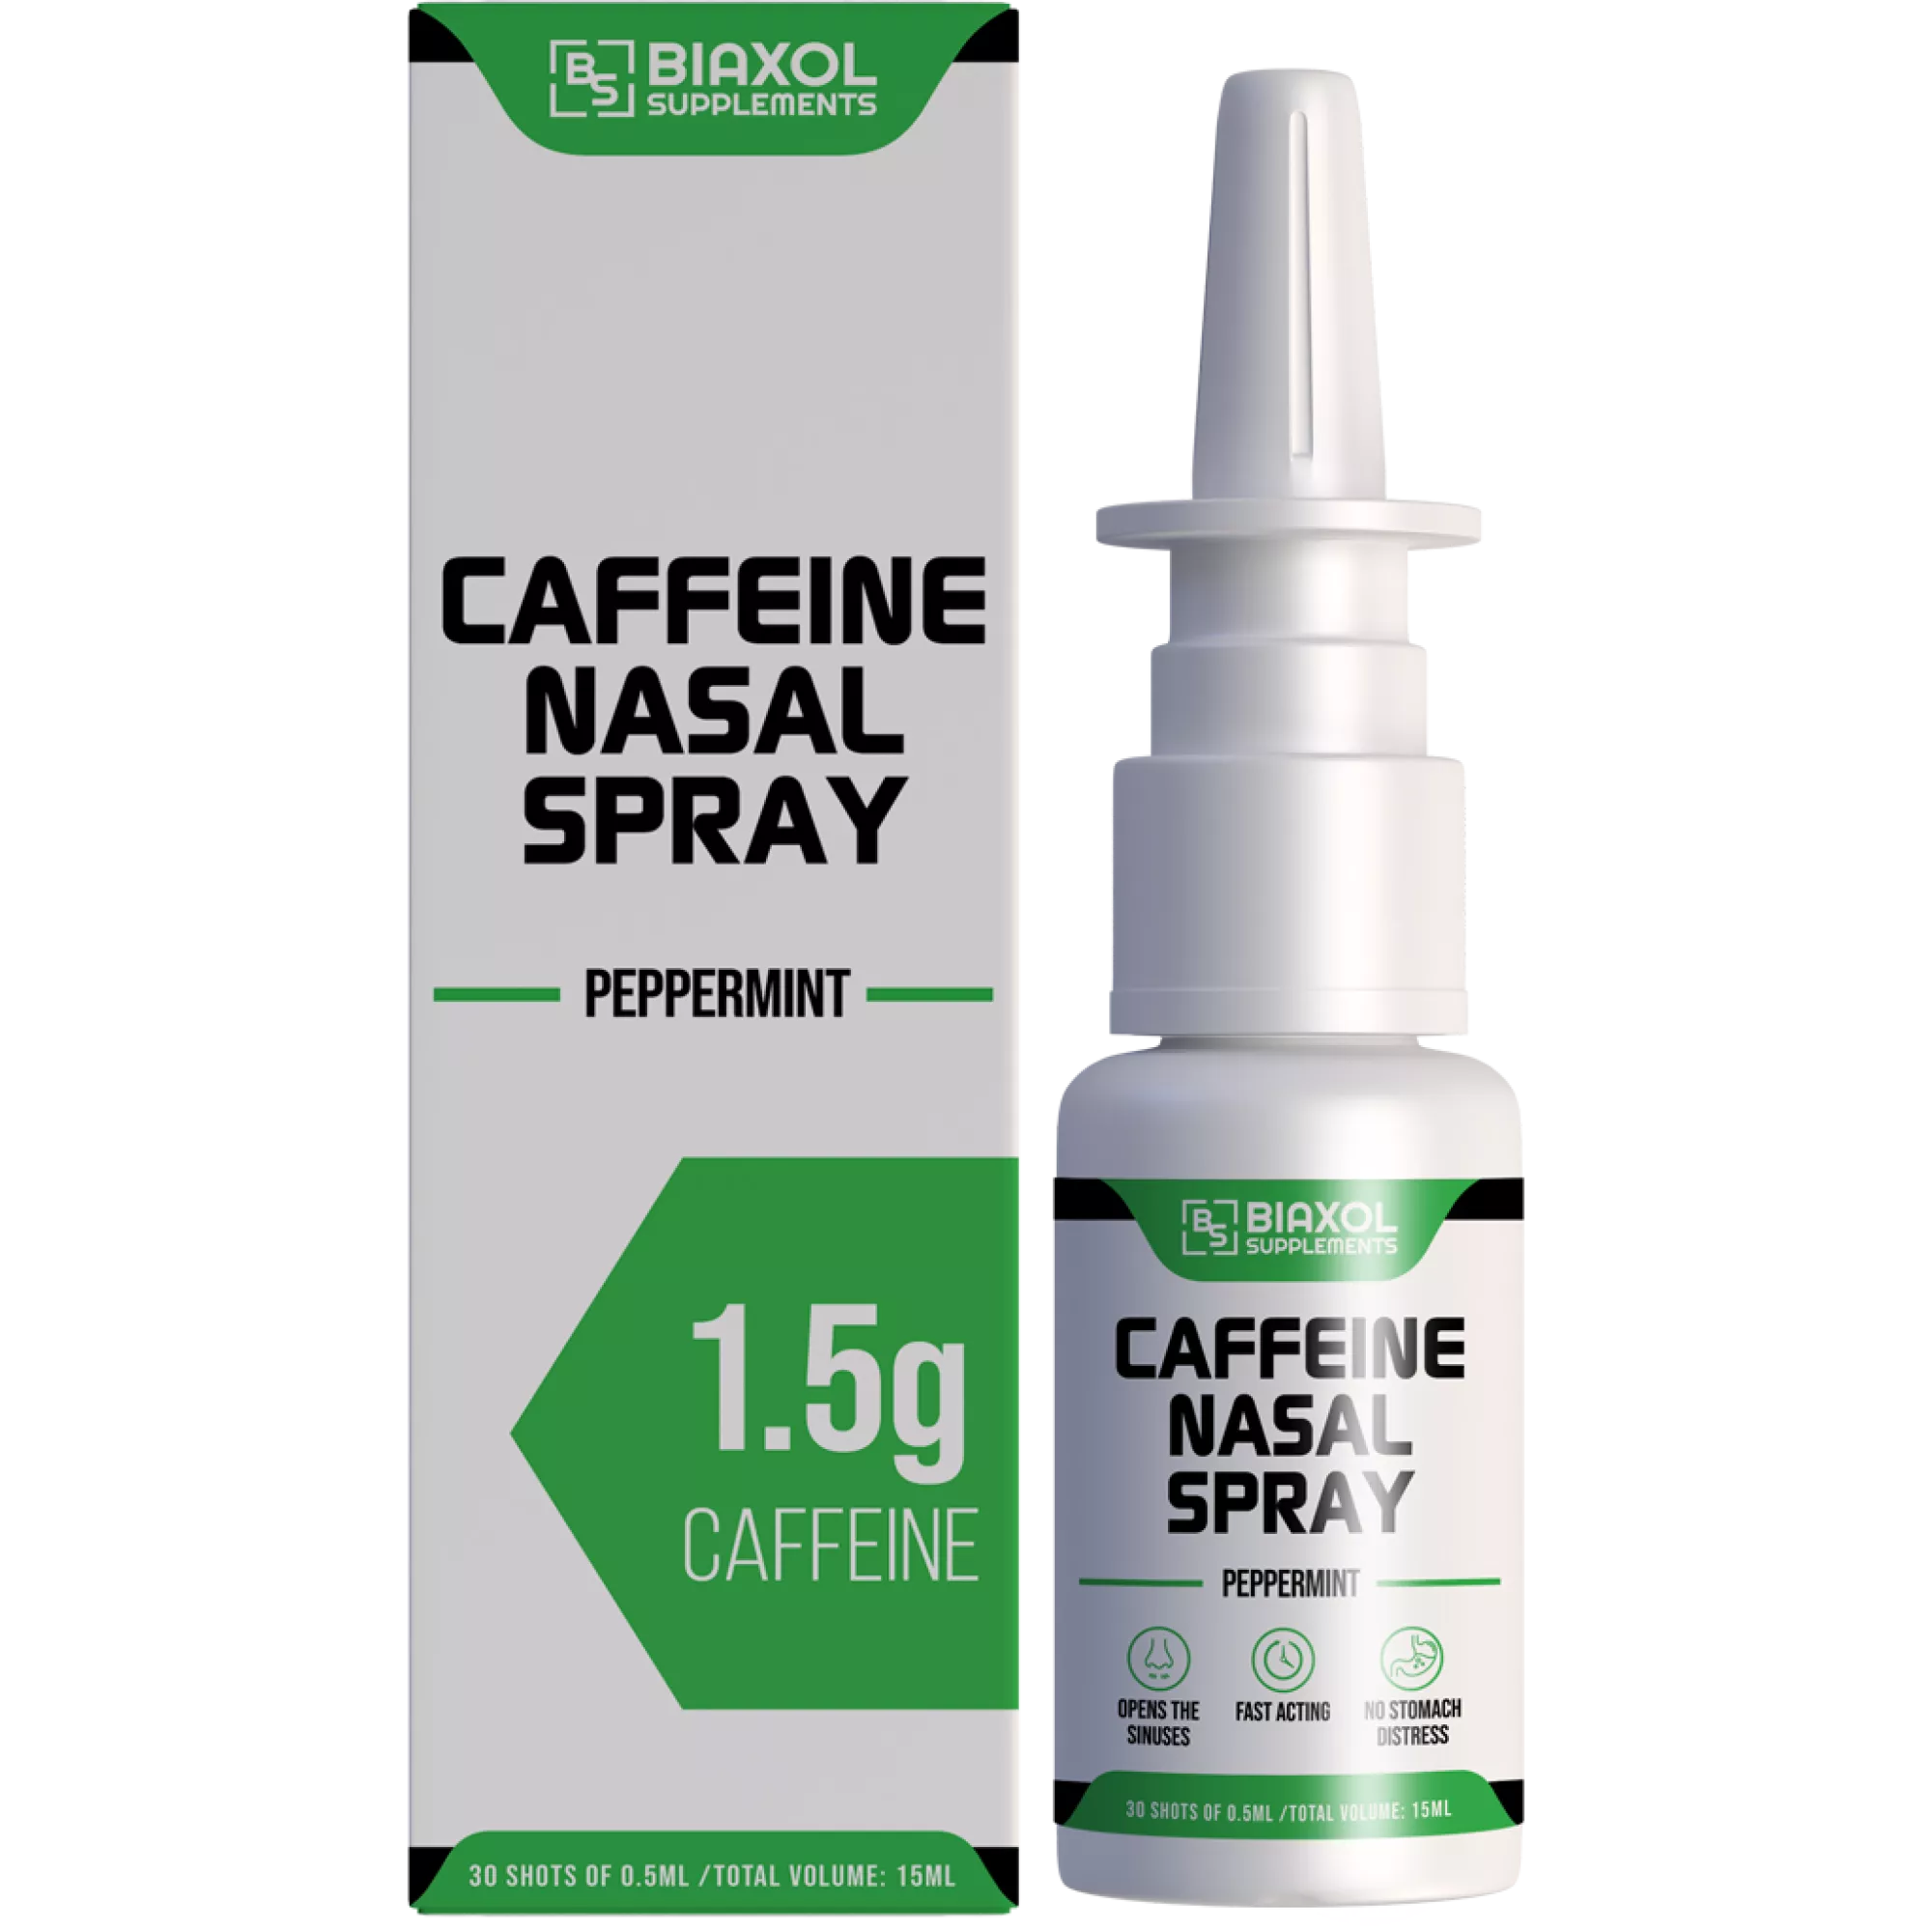 CAFFEINE NASAL SPRAY, Biaxol, Buy Steroids Online - www.deuspower.shop